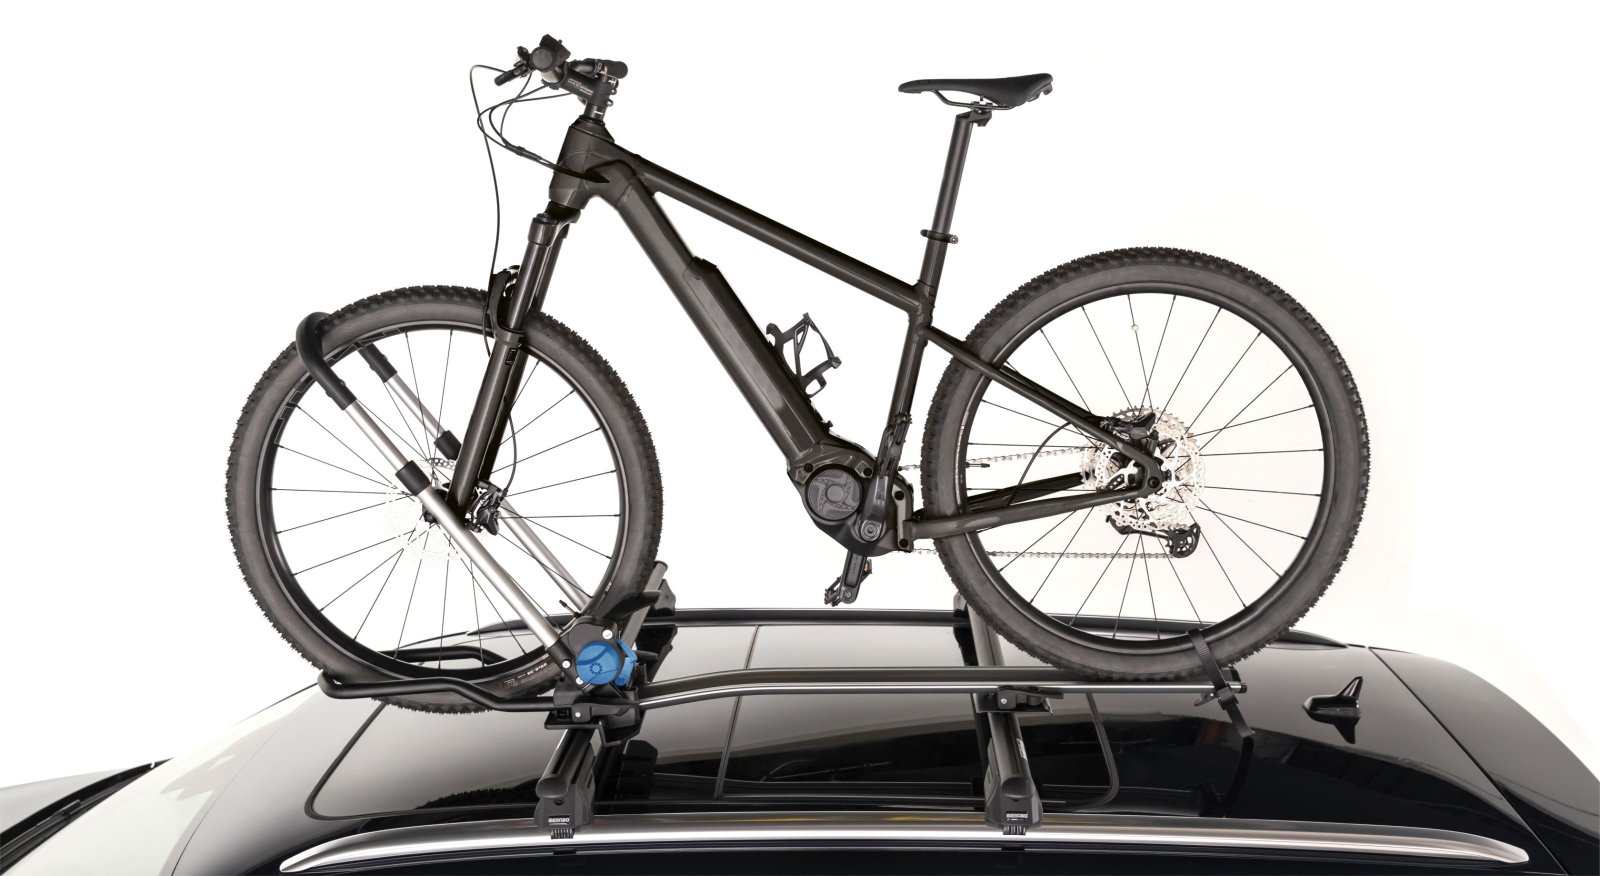 Fahrradträger für Autodach mit alternativer Befestigung gesucht |  MTB-News.de | IBC Mountainbike Forum